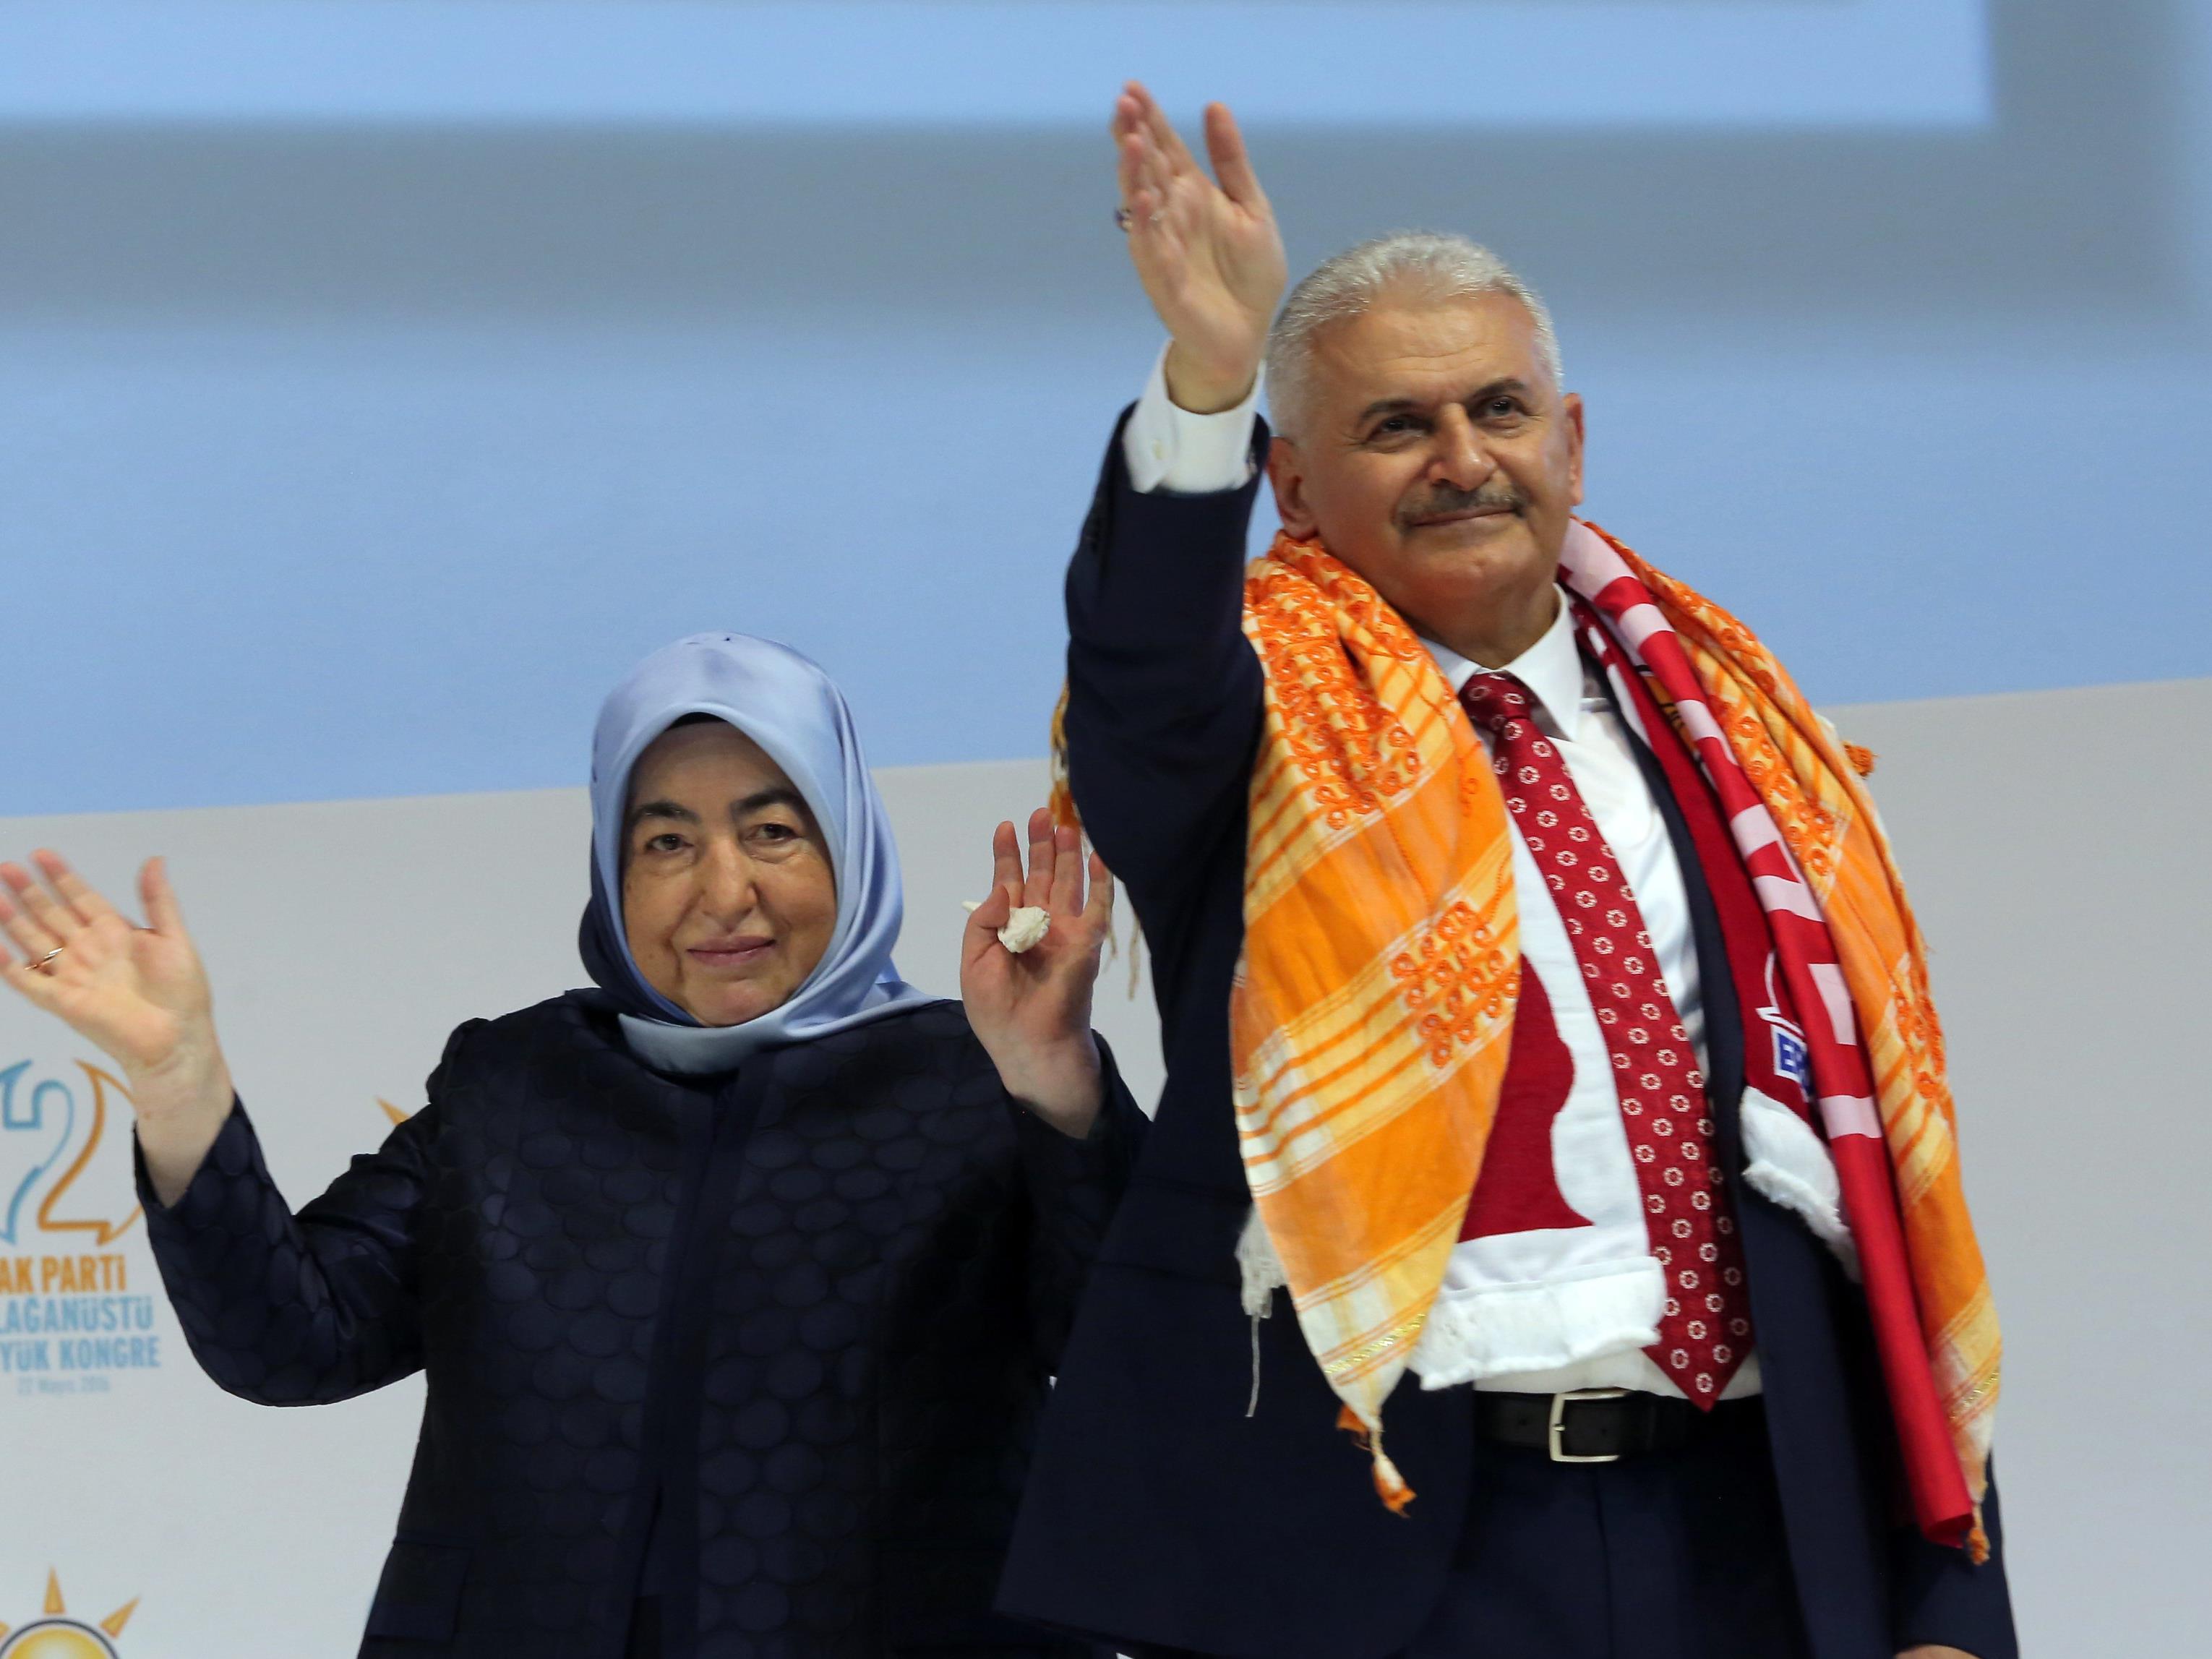 Der Erdogan-Vertraute Binali Yildirim wurde zum neuen Vorsitzenden der AKP und zum Ministerpräsidenten der Türkei gewählt.